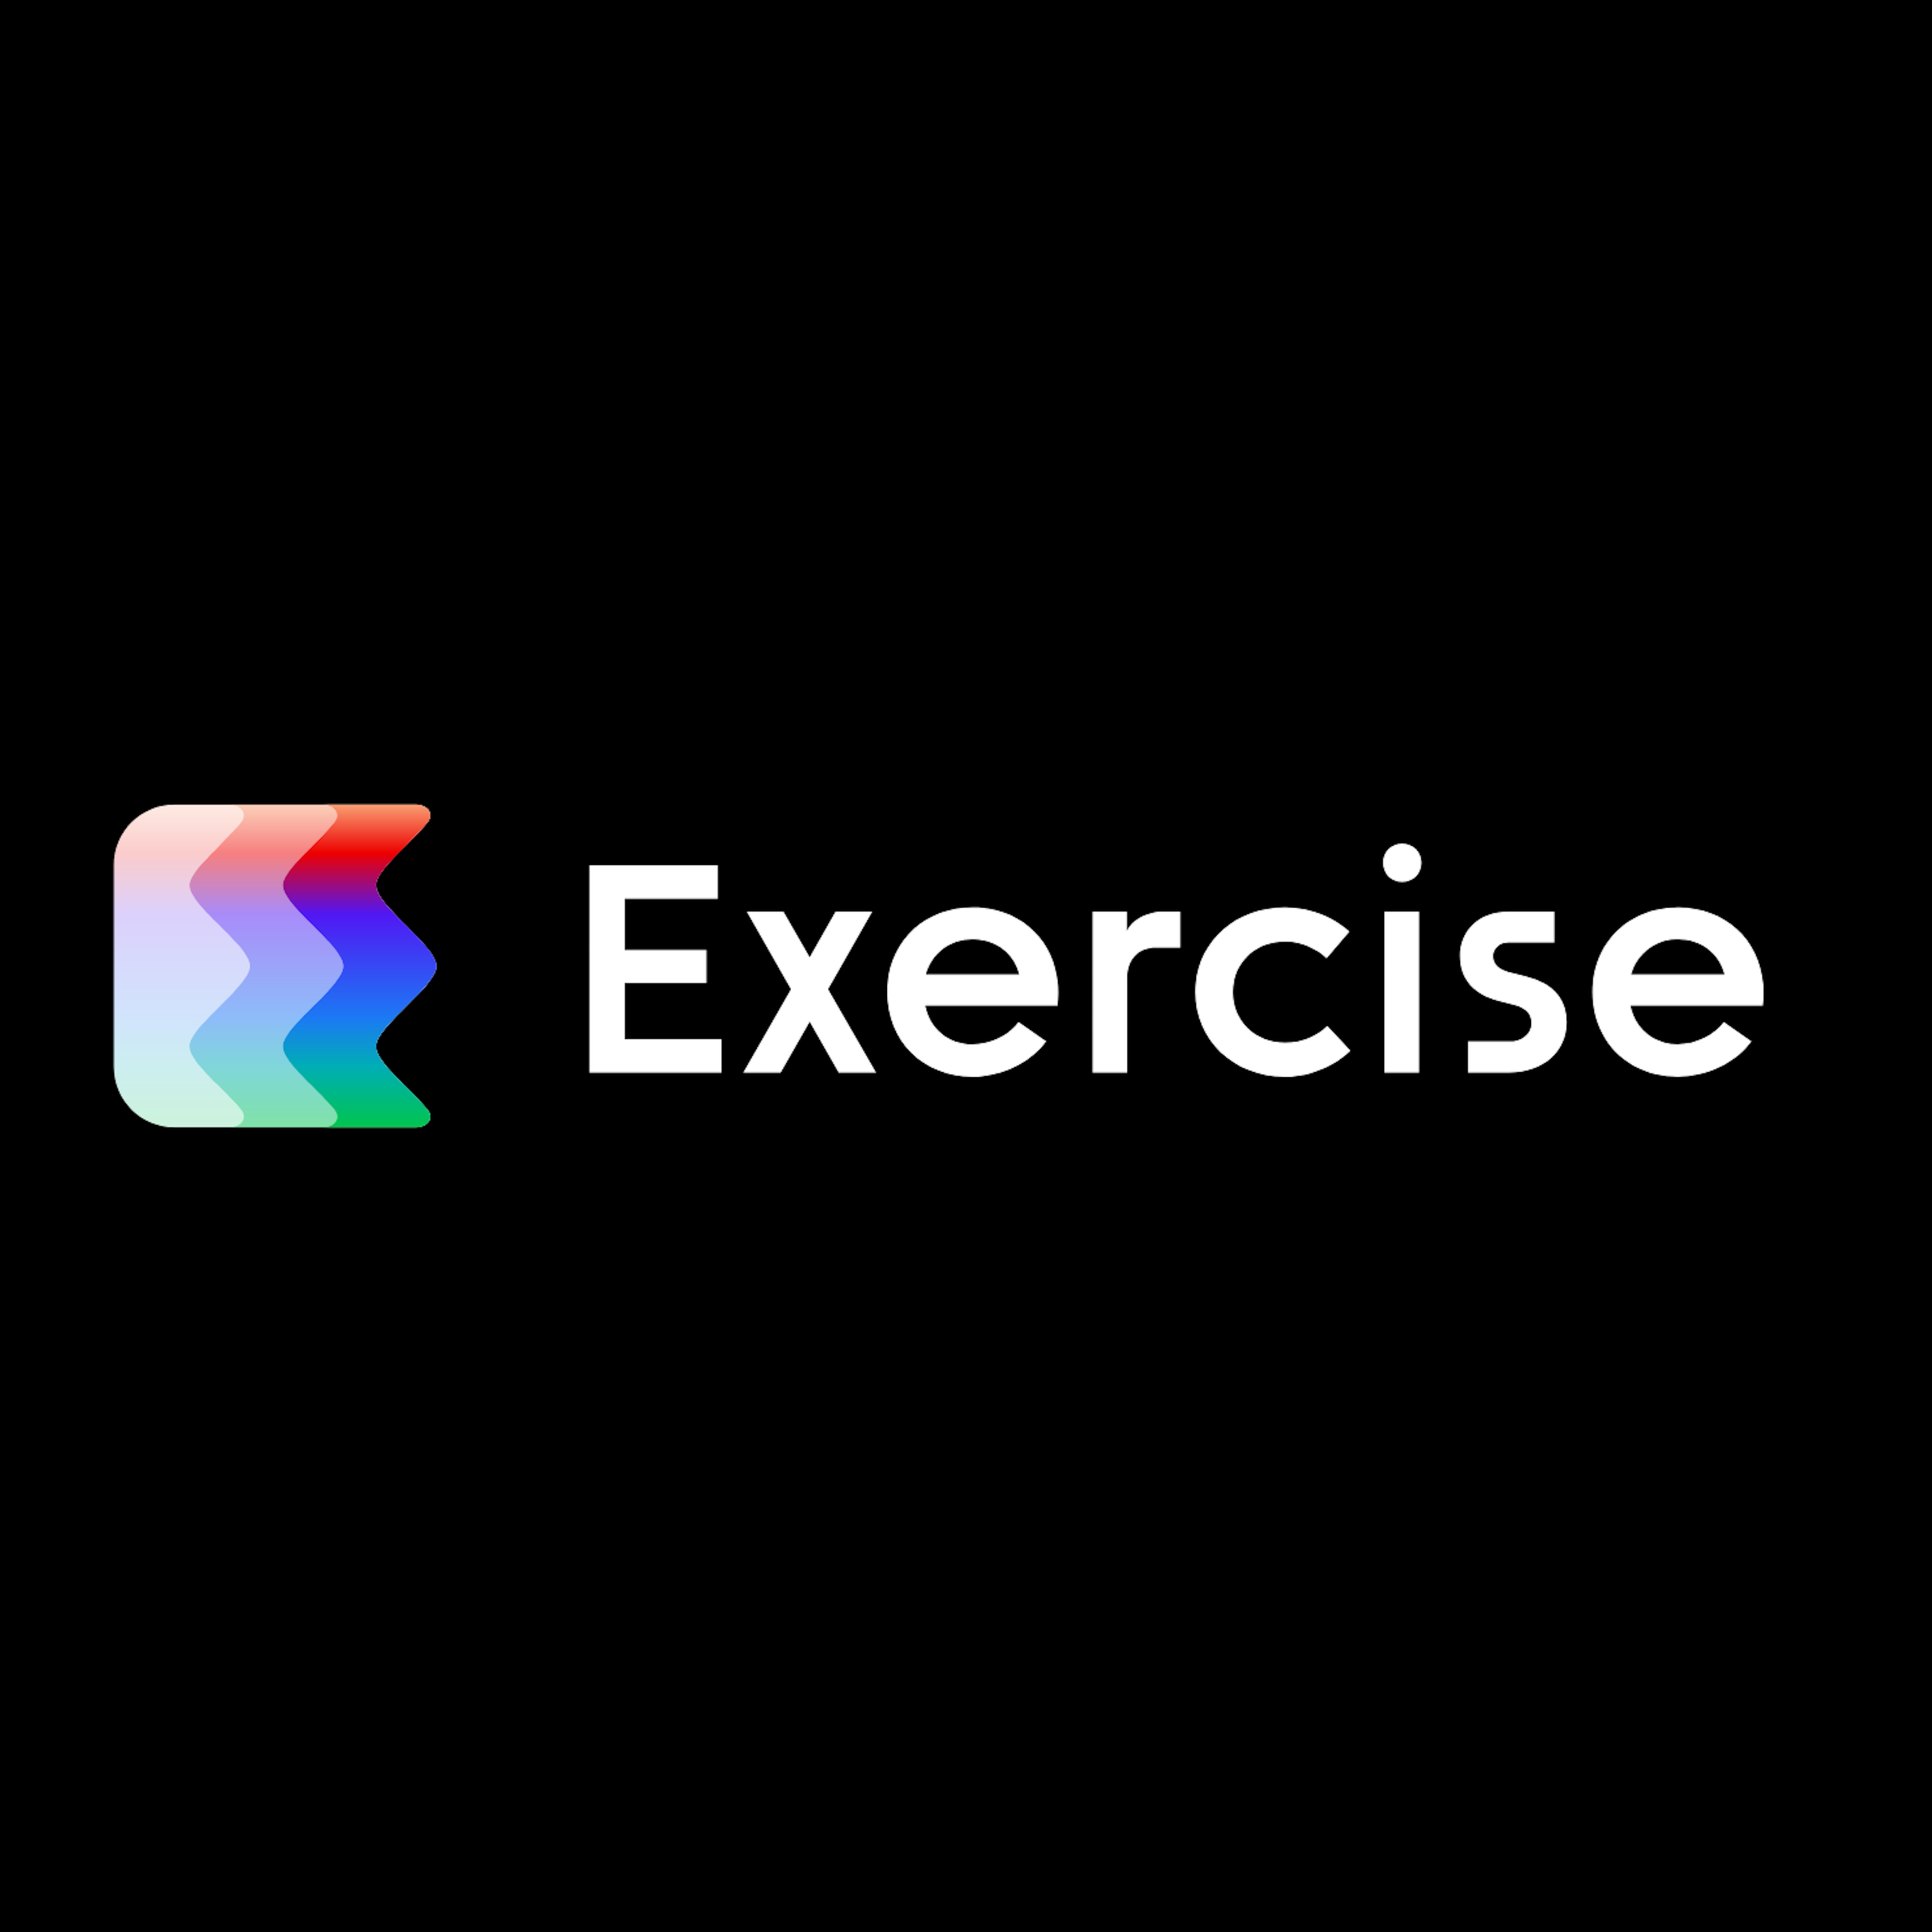 Exercise.com Logo